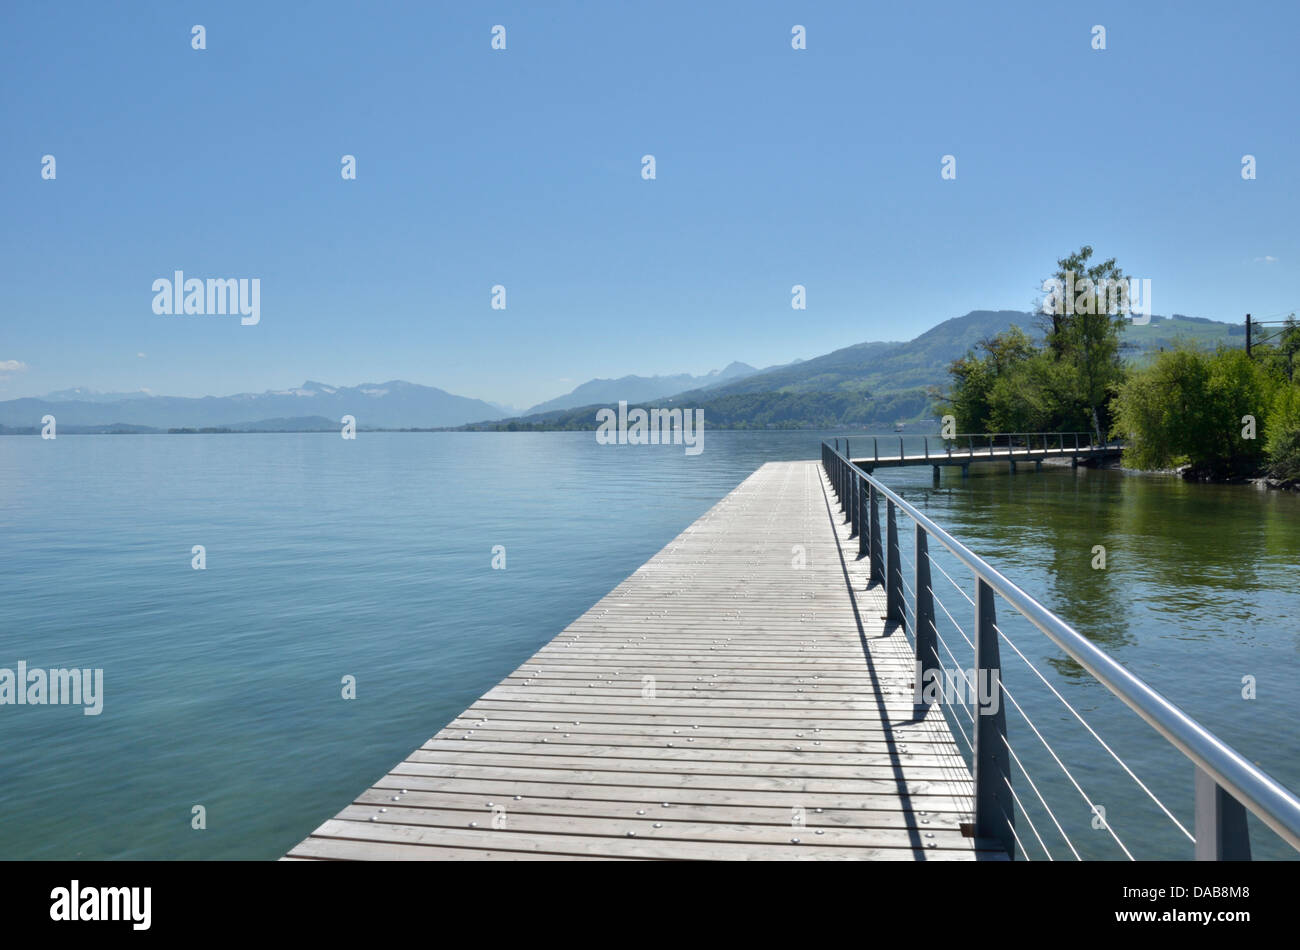 Wooden causeway on Lake Zurich near Wädenswil, Switzerland Stock Photo